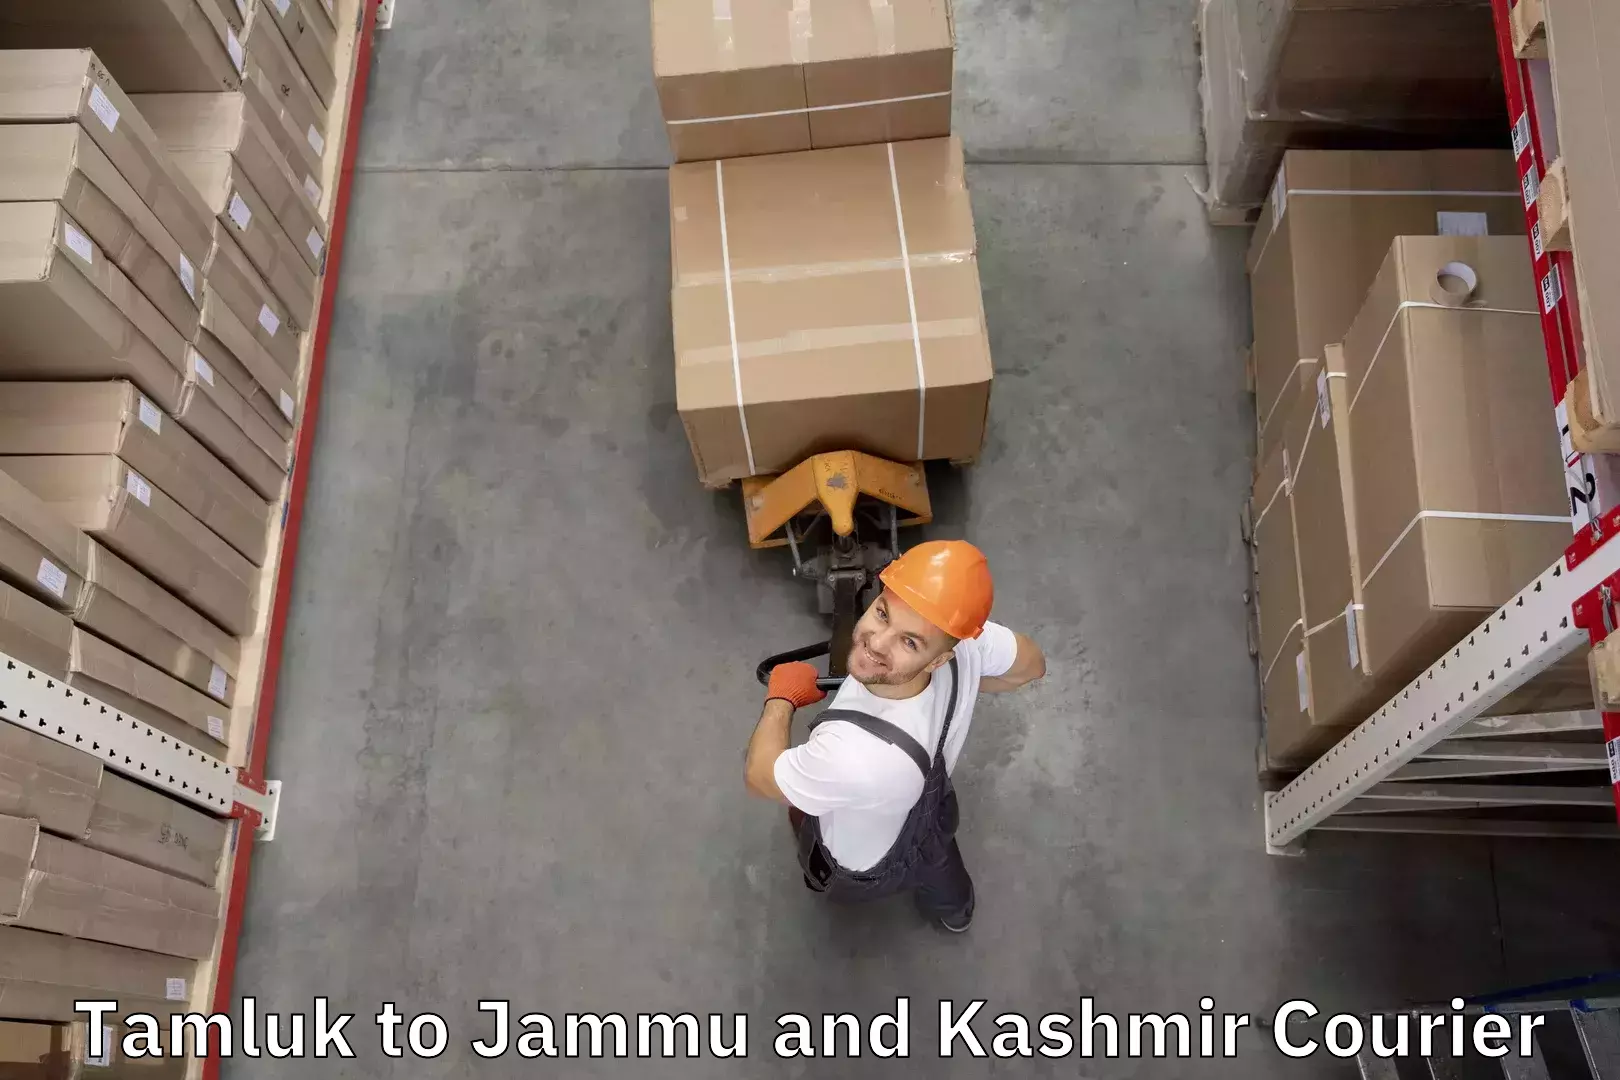 Baggage shipping quotes Tamluk to Bandipur